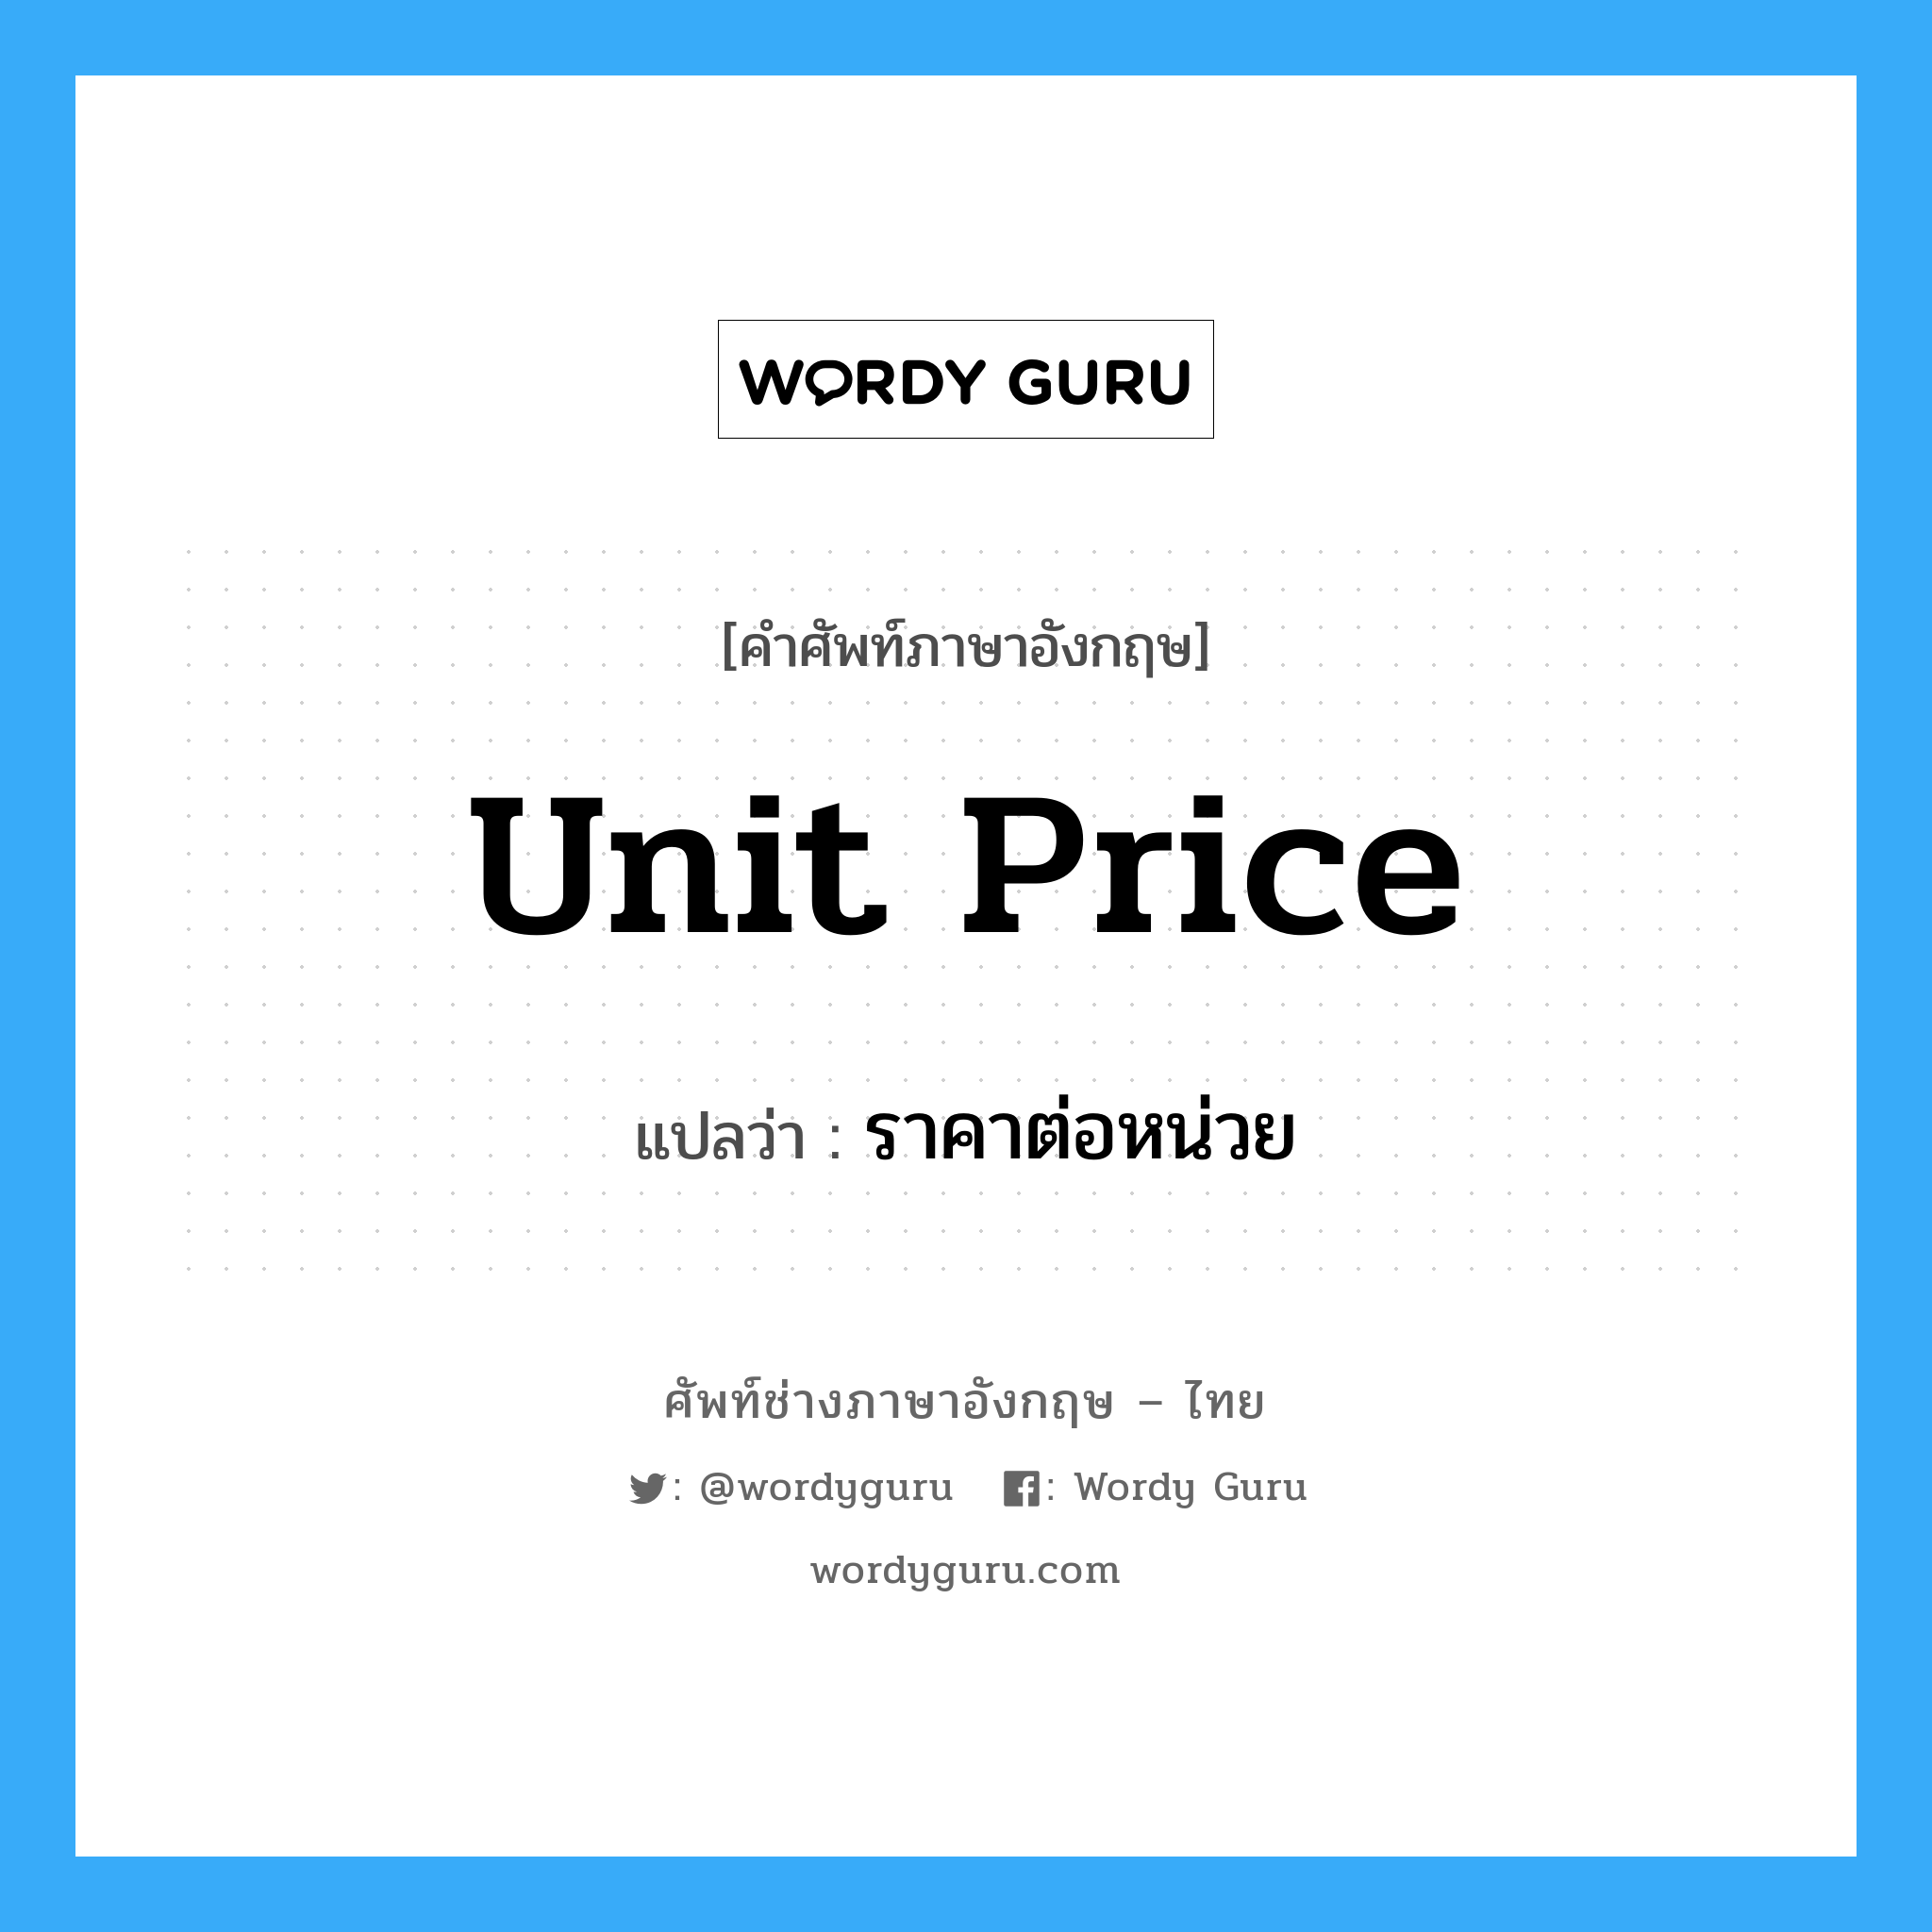 unit price แปลว่า?, คำศัพท์ช่างภาษาอังกฤษ - ไทย unit price คำศัพท์ภาษาอังกฤษ unit price แปลว่า ราคาต่อหน่วย